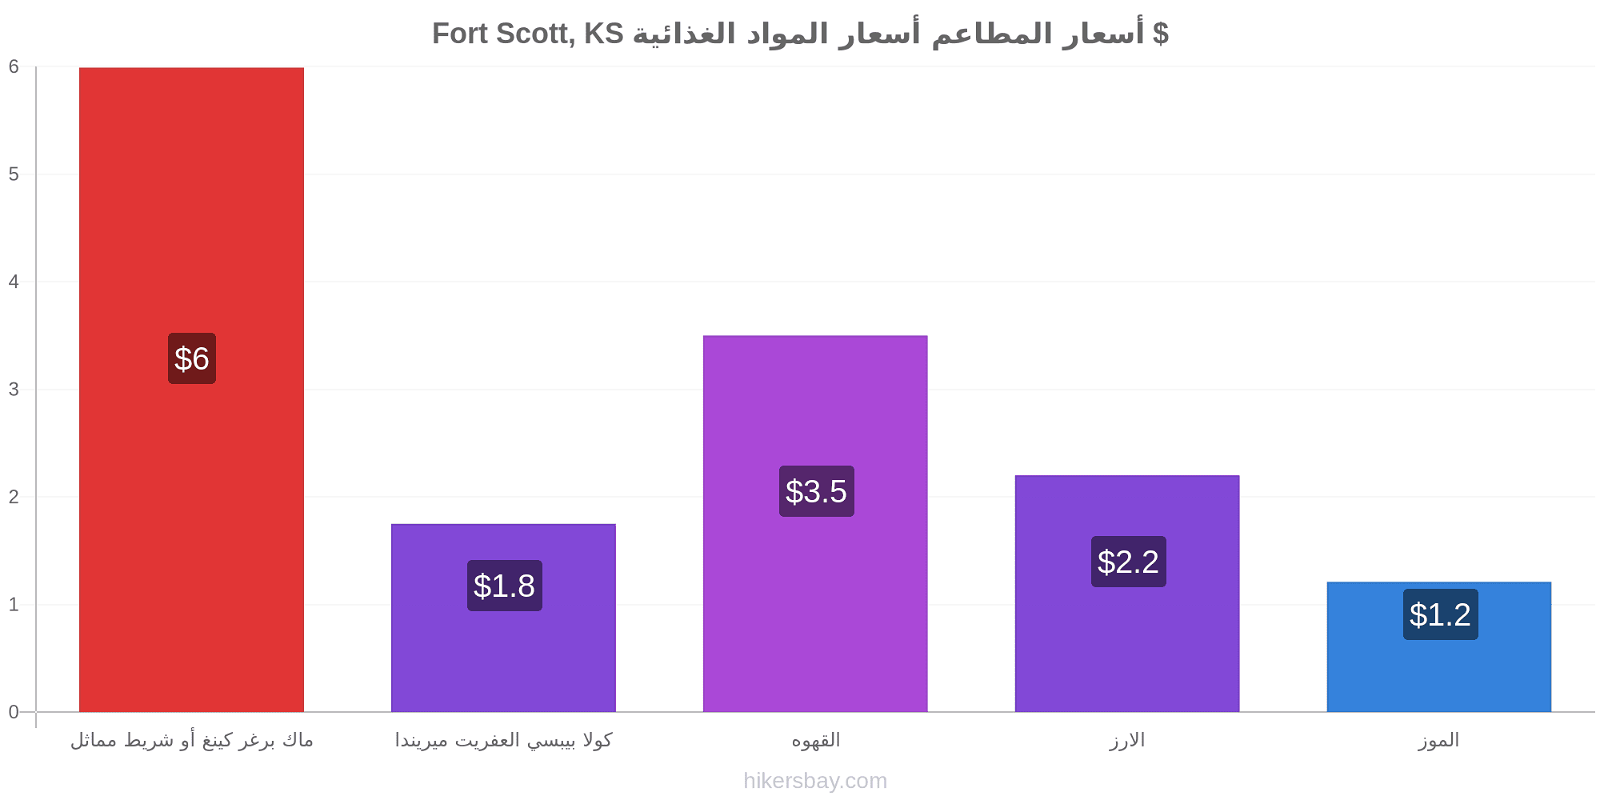 Fort Scott, KS تغييرات الأسعار hikersbay.com